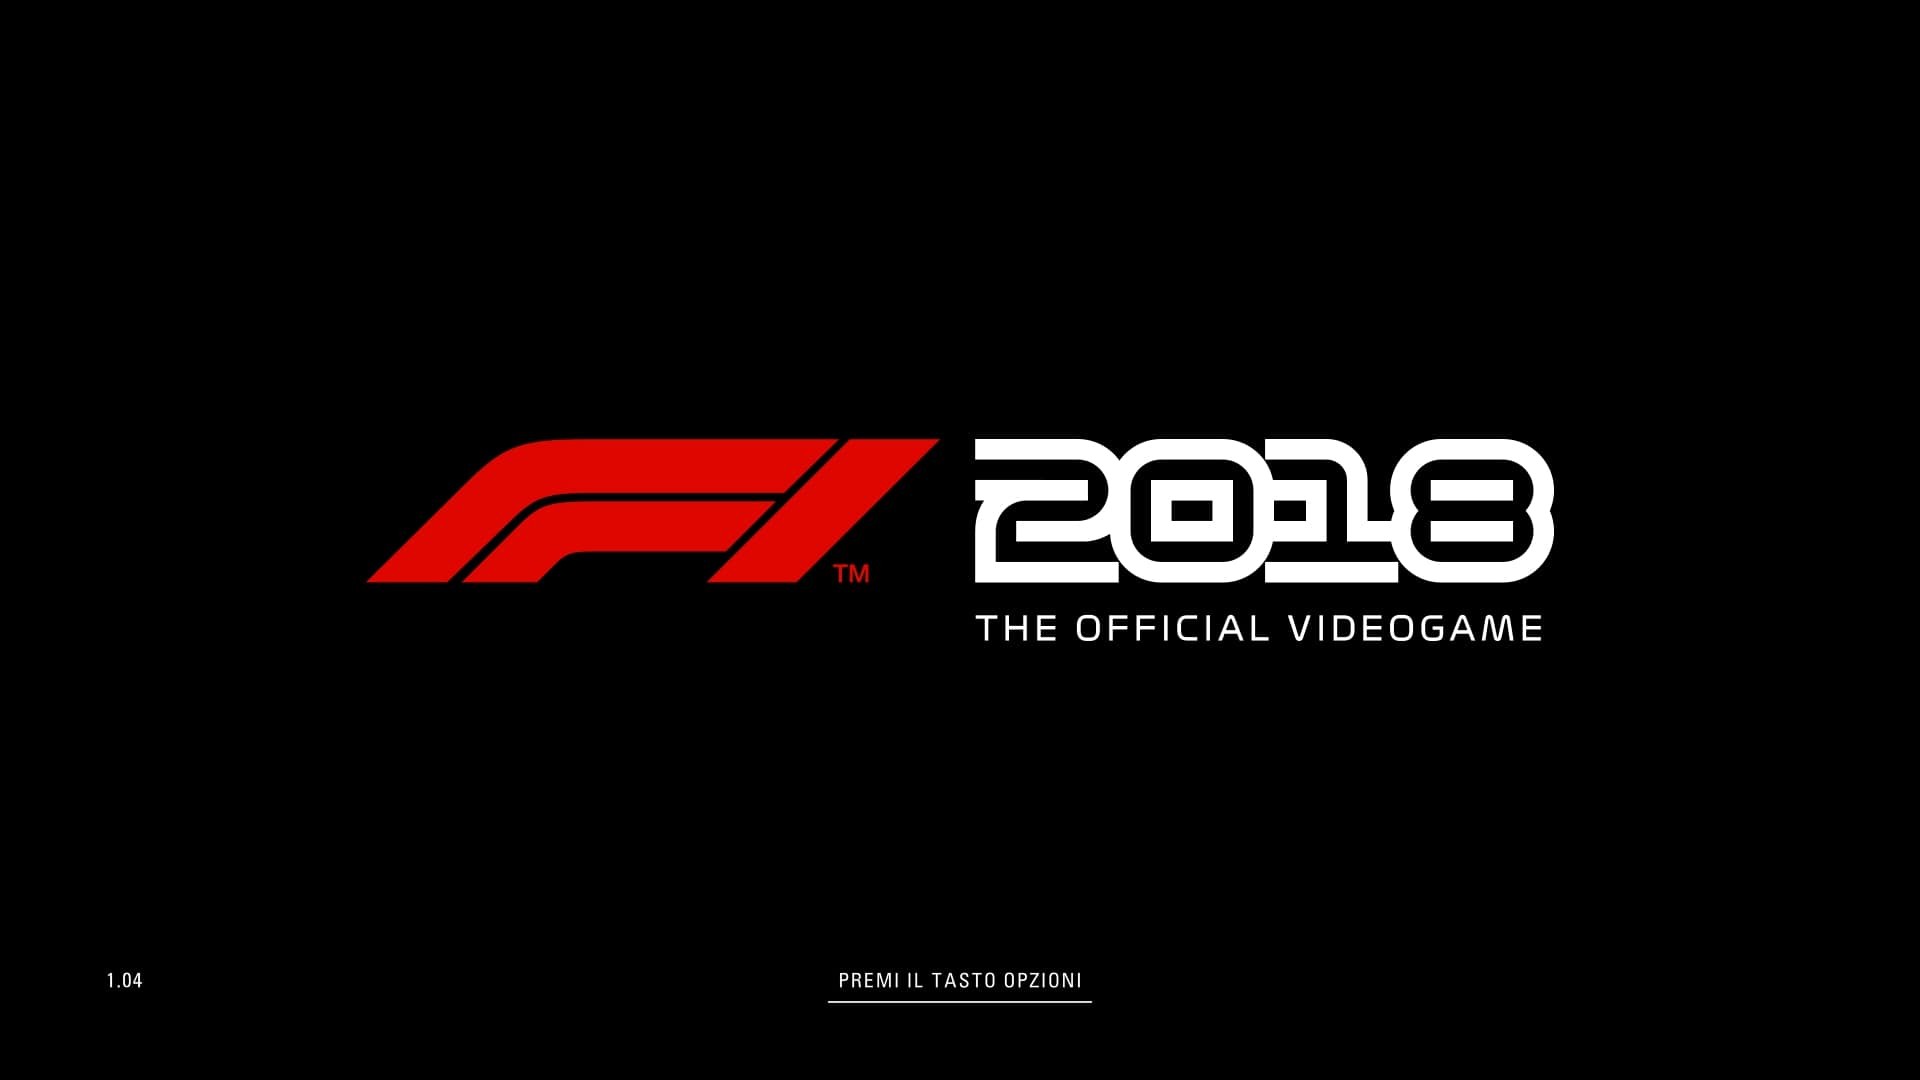 F1 2018 copertina sfondo nero